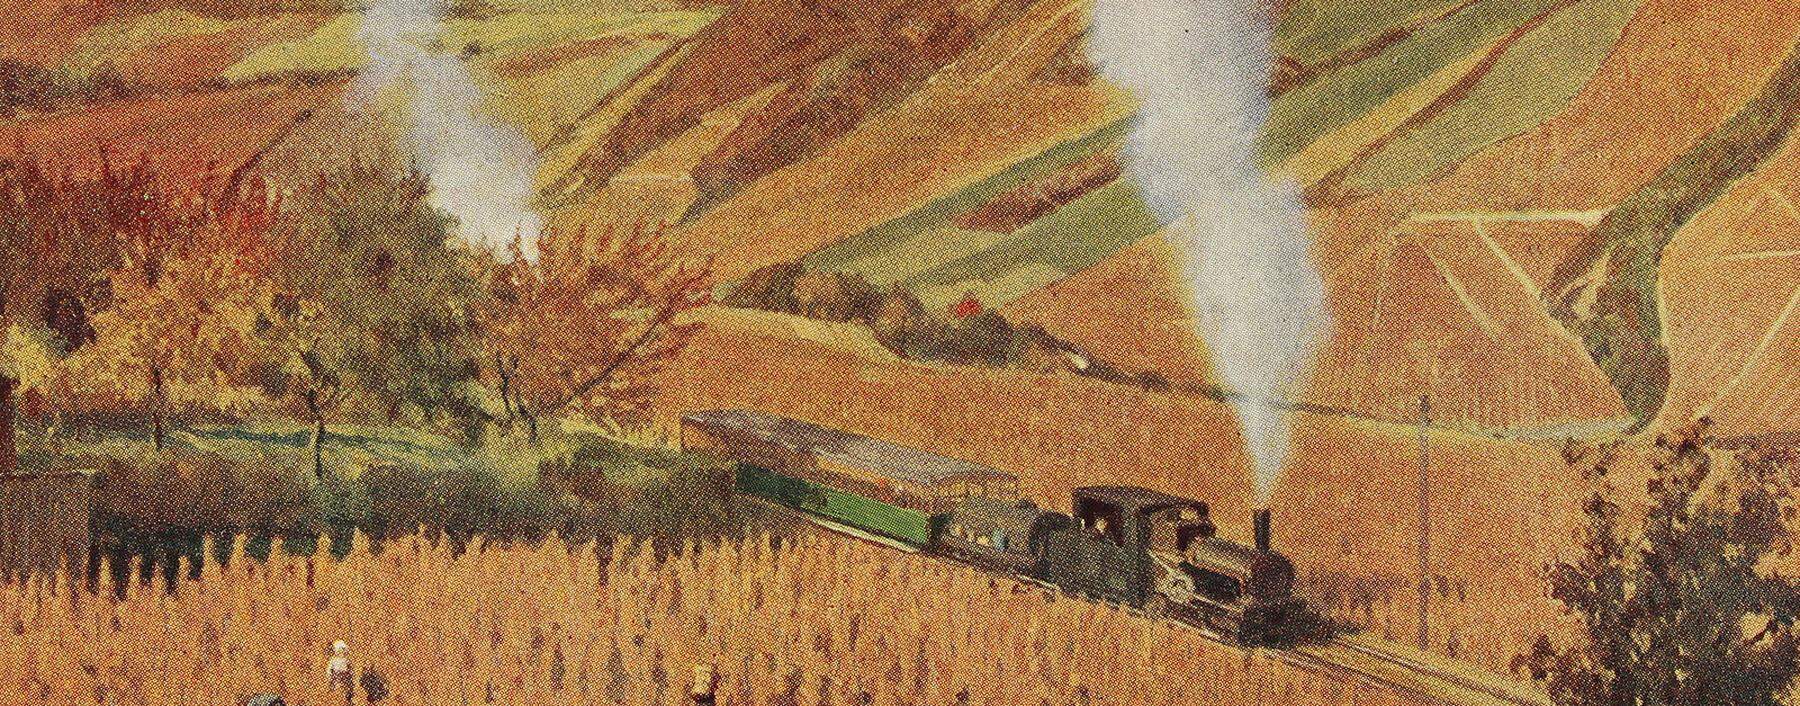 Die Kahlenbergbahn um 1910 auf einer Postkarte nach einem Gemälde von E. Baschny, 